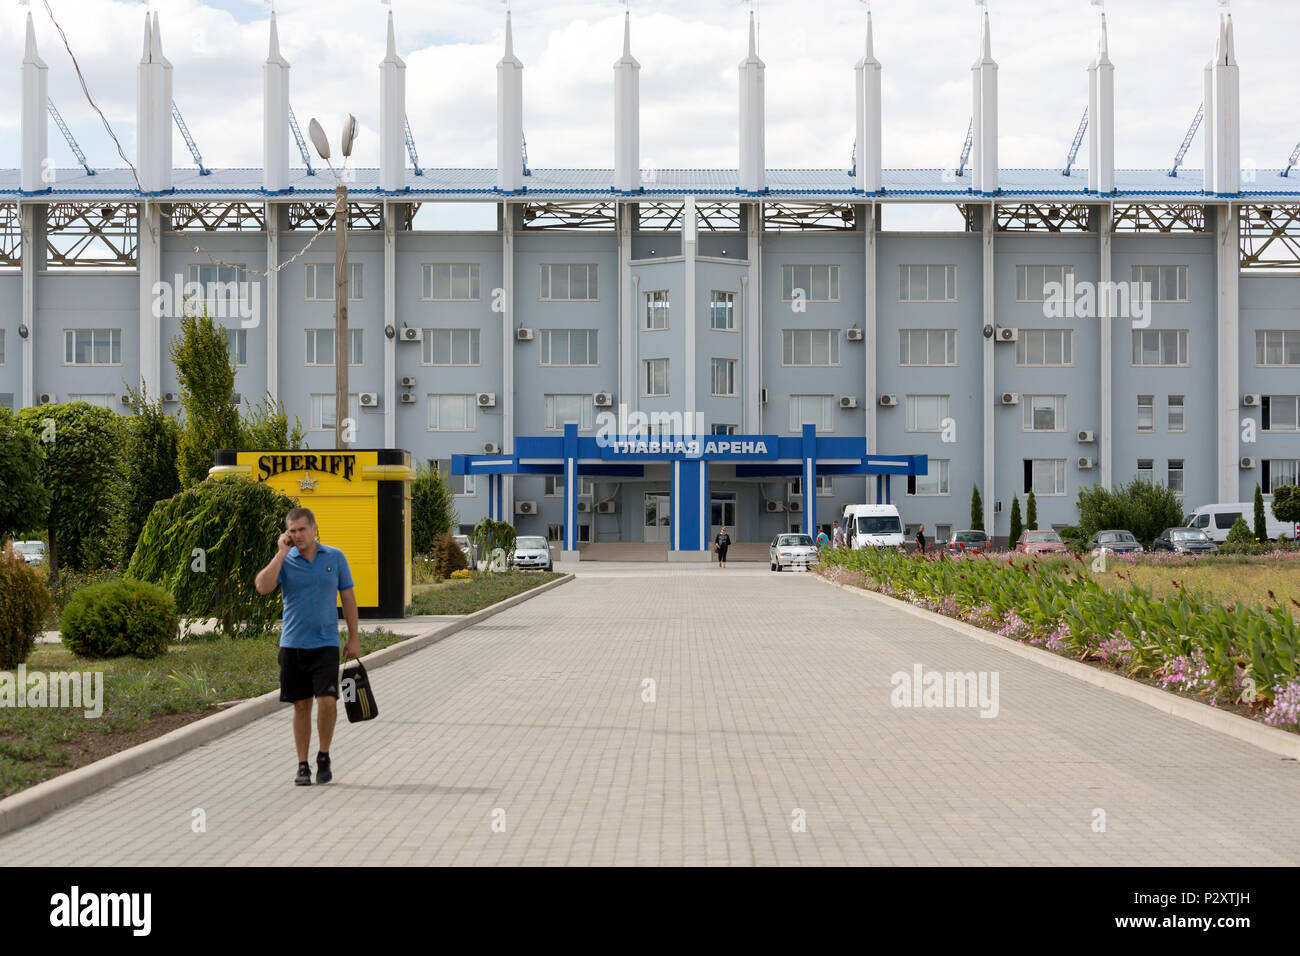 25.08.2016, Tiraspol, Transnistrien, Moldau - Der Sheriff Sportkomplex mit zwei Fußballstadien (Foto: Grosse Arena) gehört zur multikulturellen Stockfoto